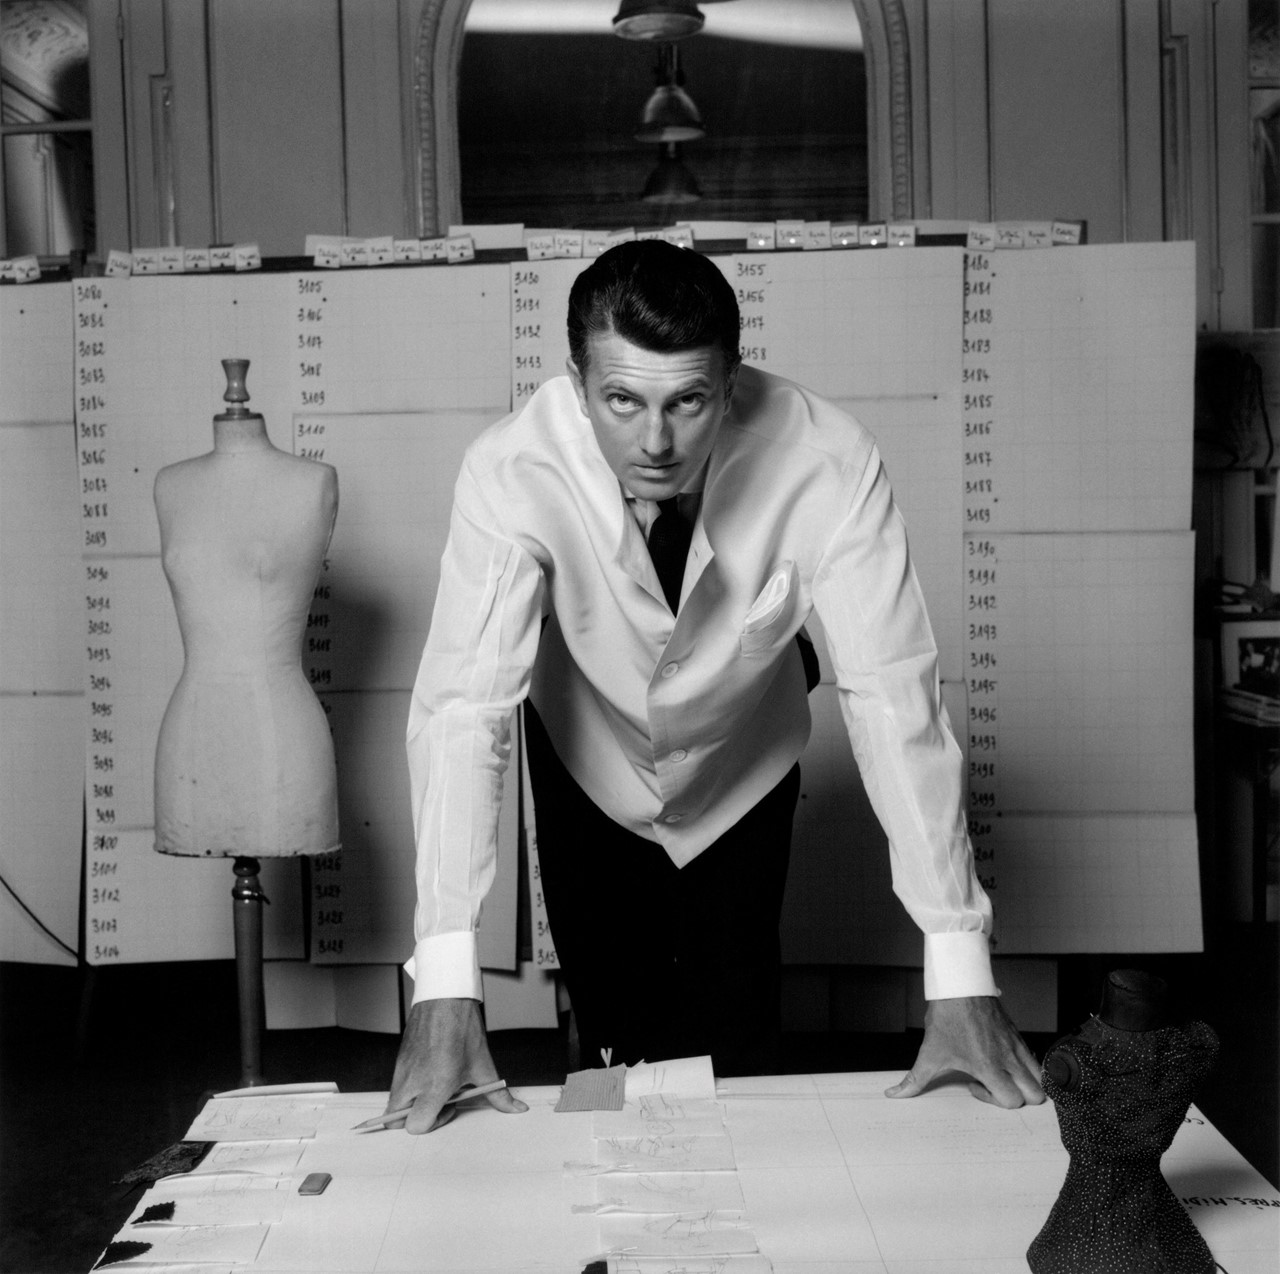 Hubert de Givenchy was an unknown designer until he met Audrey Hepburn in 1953